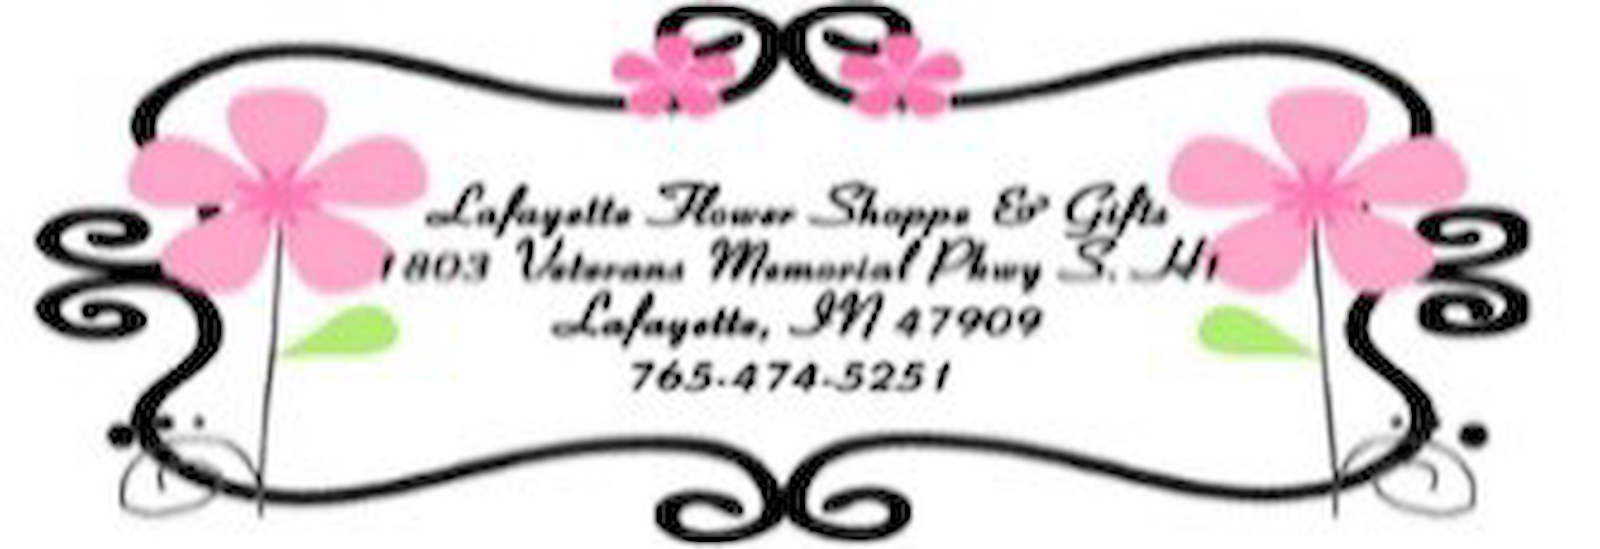 Lafayette Flowers & Gift Shop